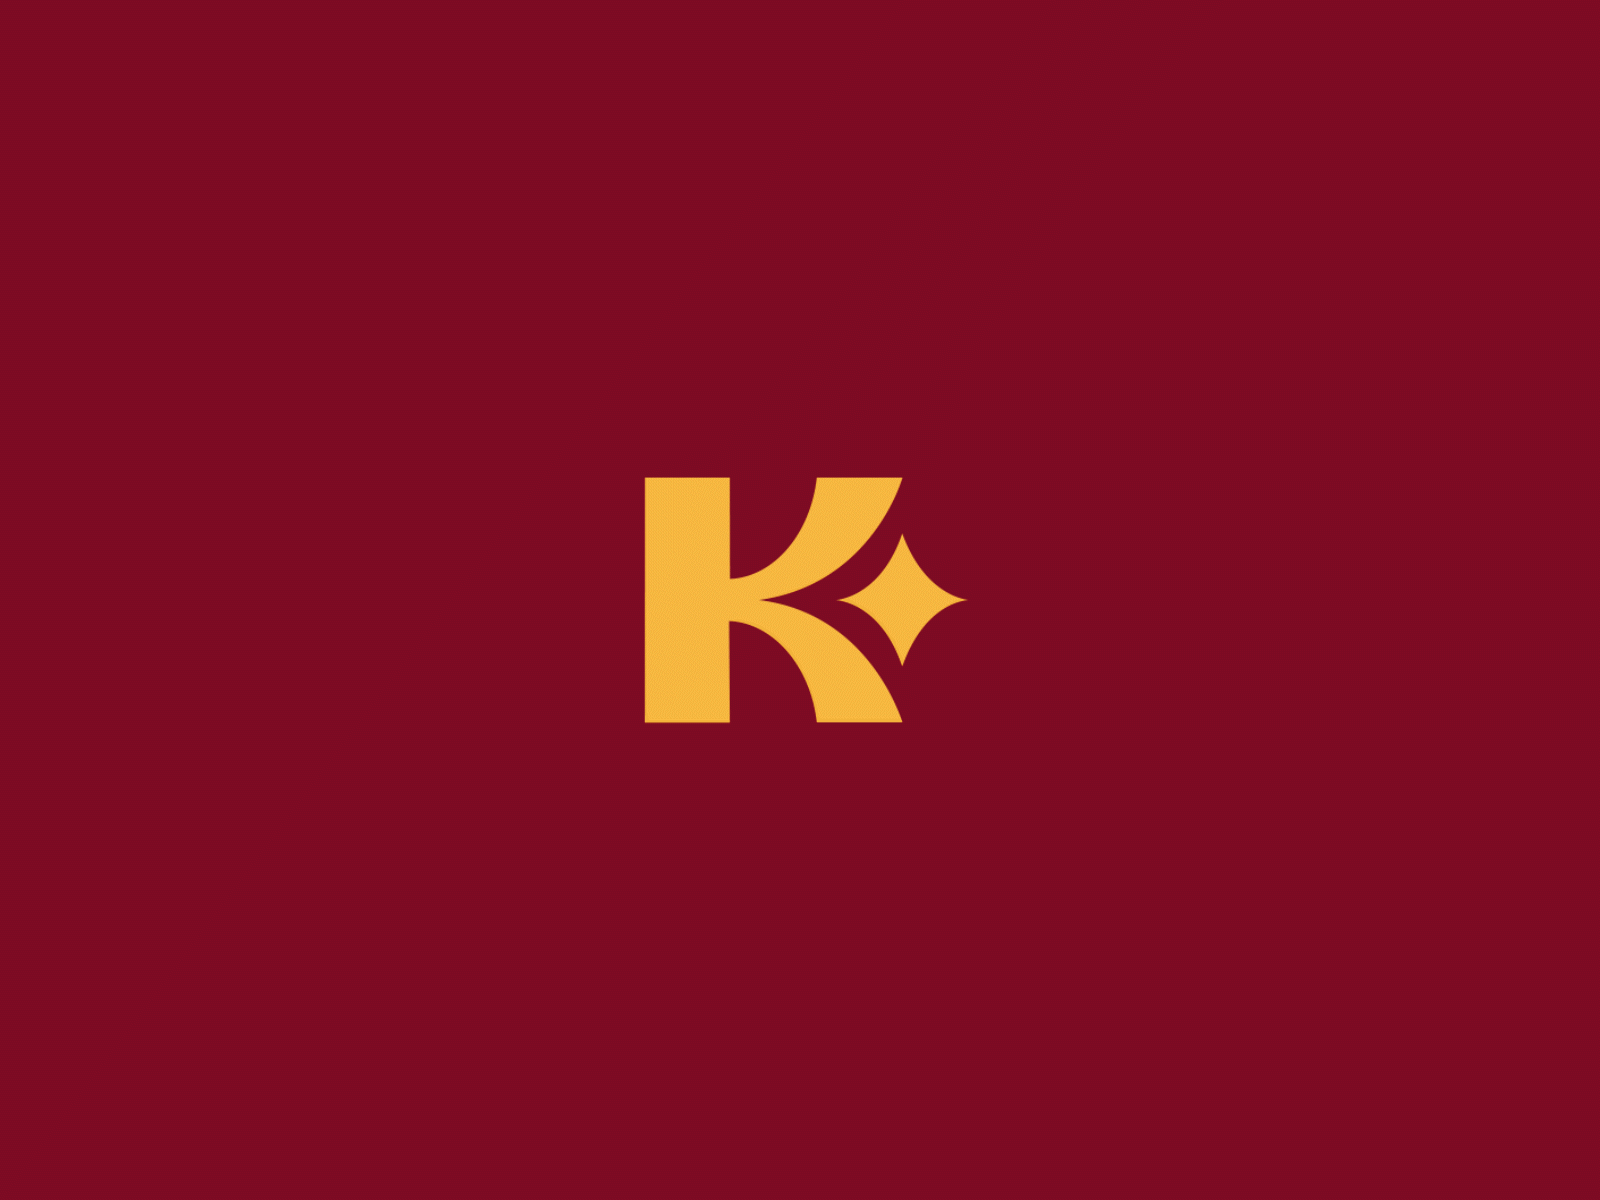 K-star logo animation